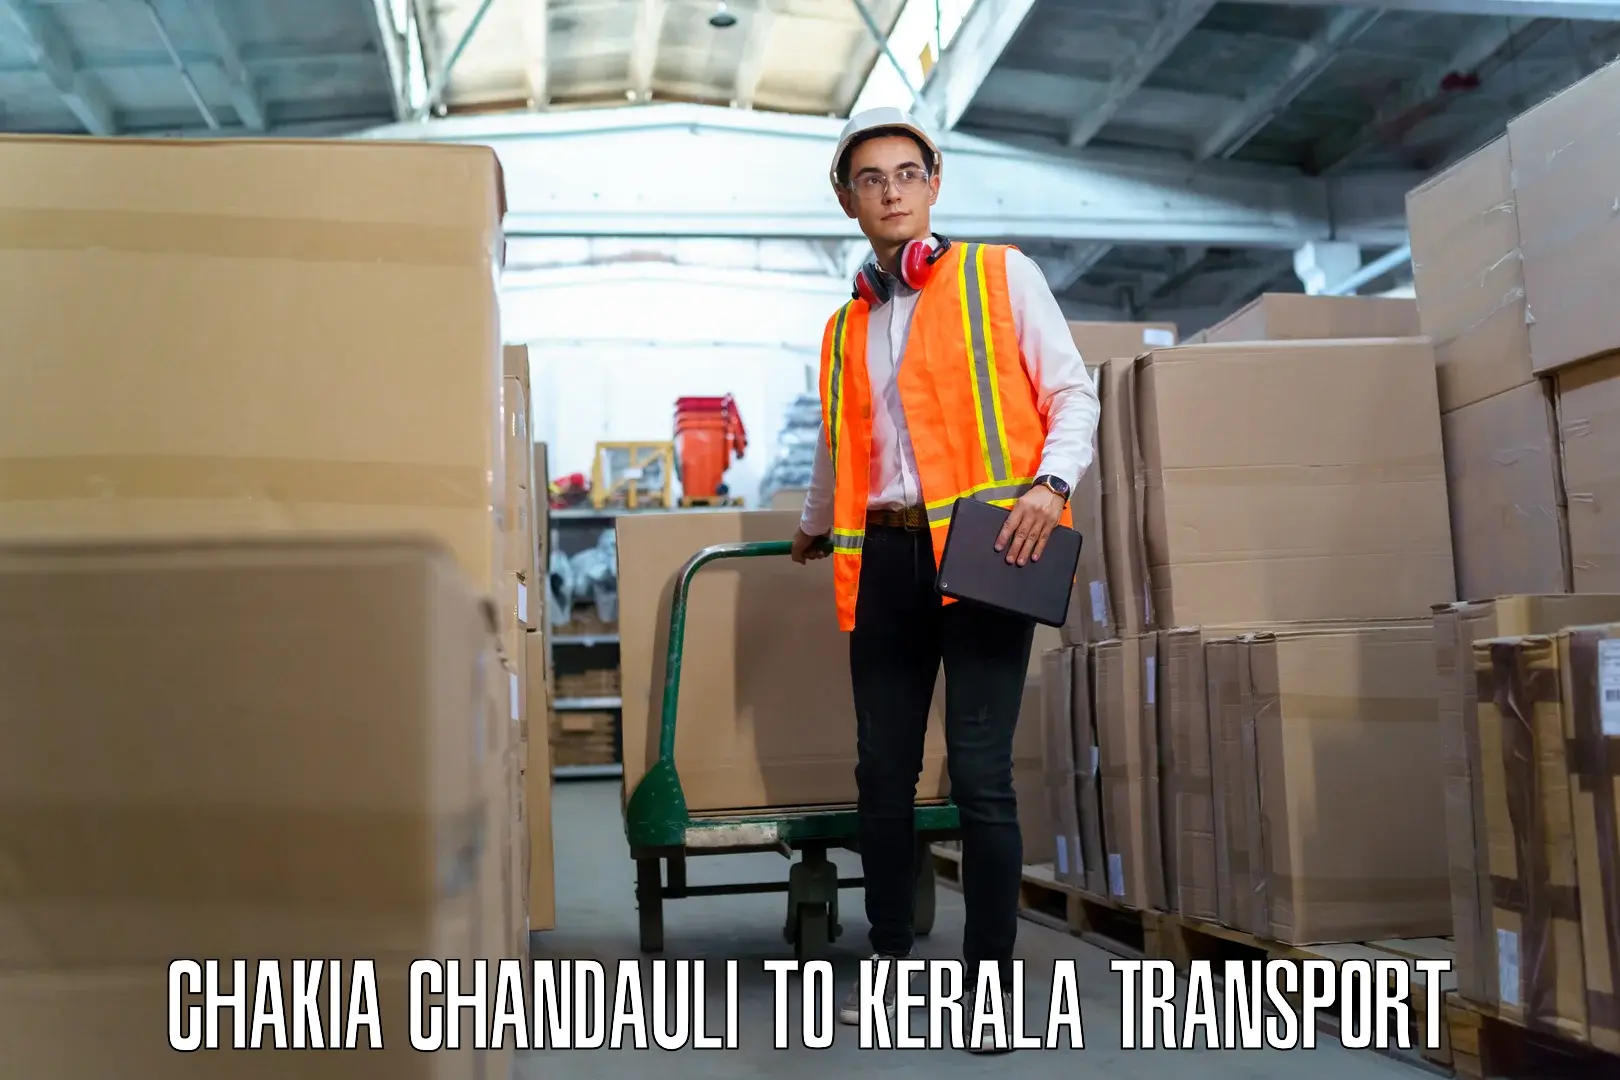 Daily transport service Chakia Chandauli to Pathanamthitta